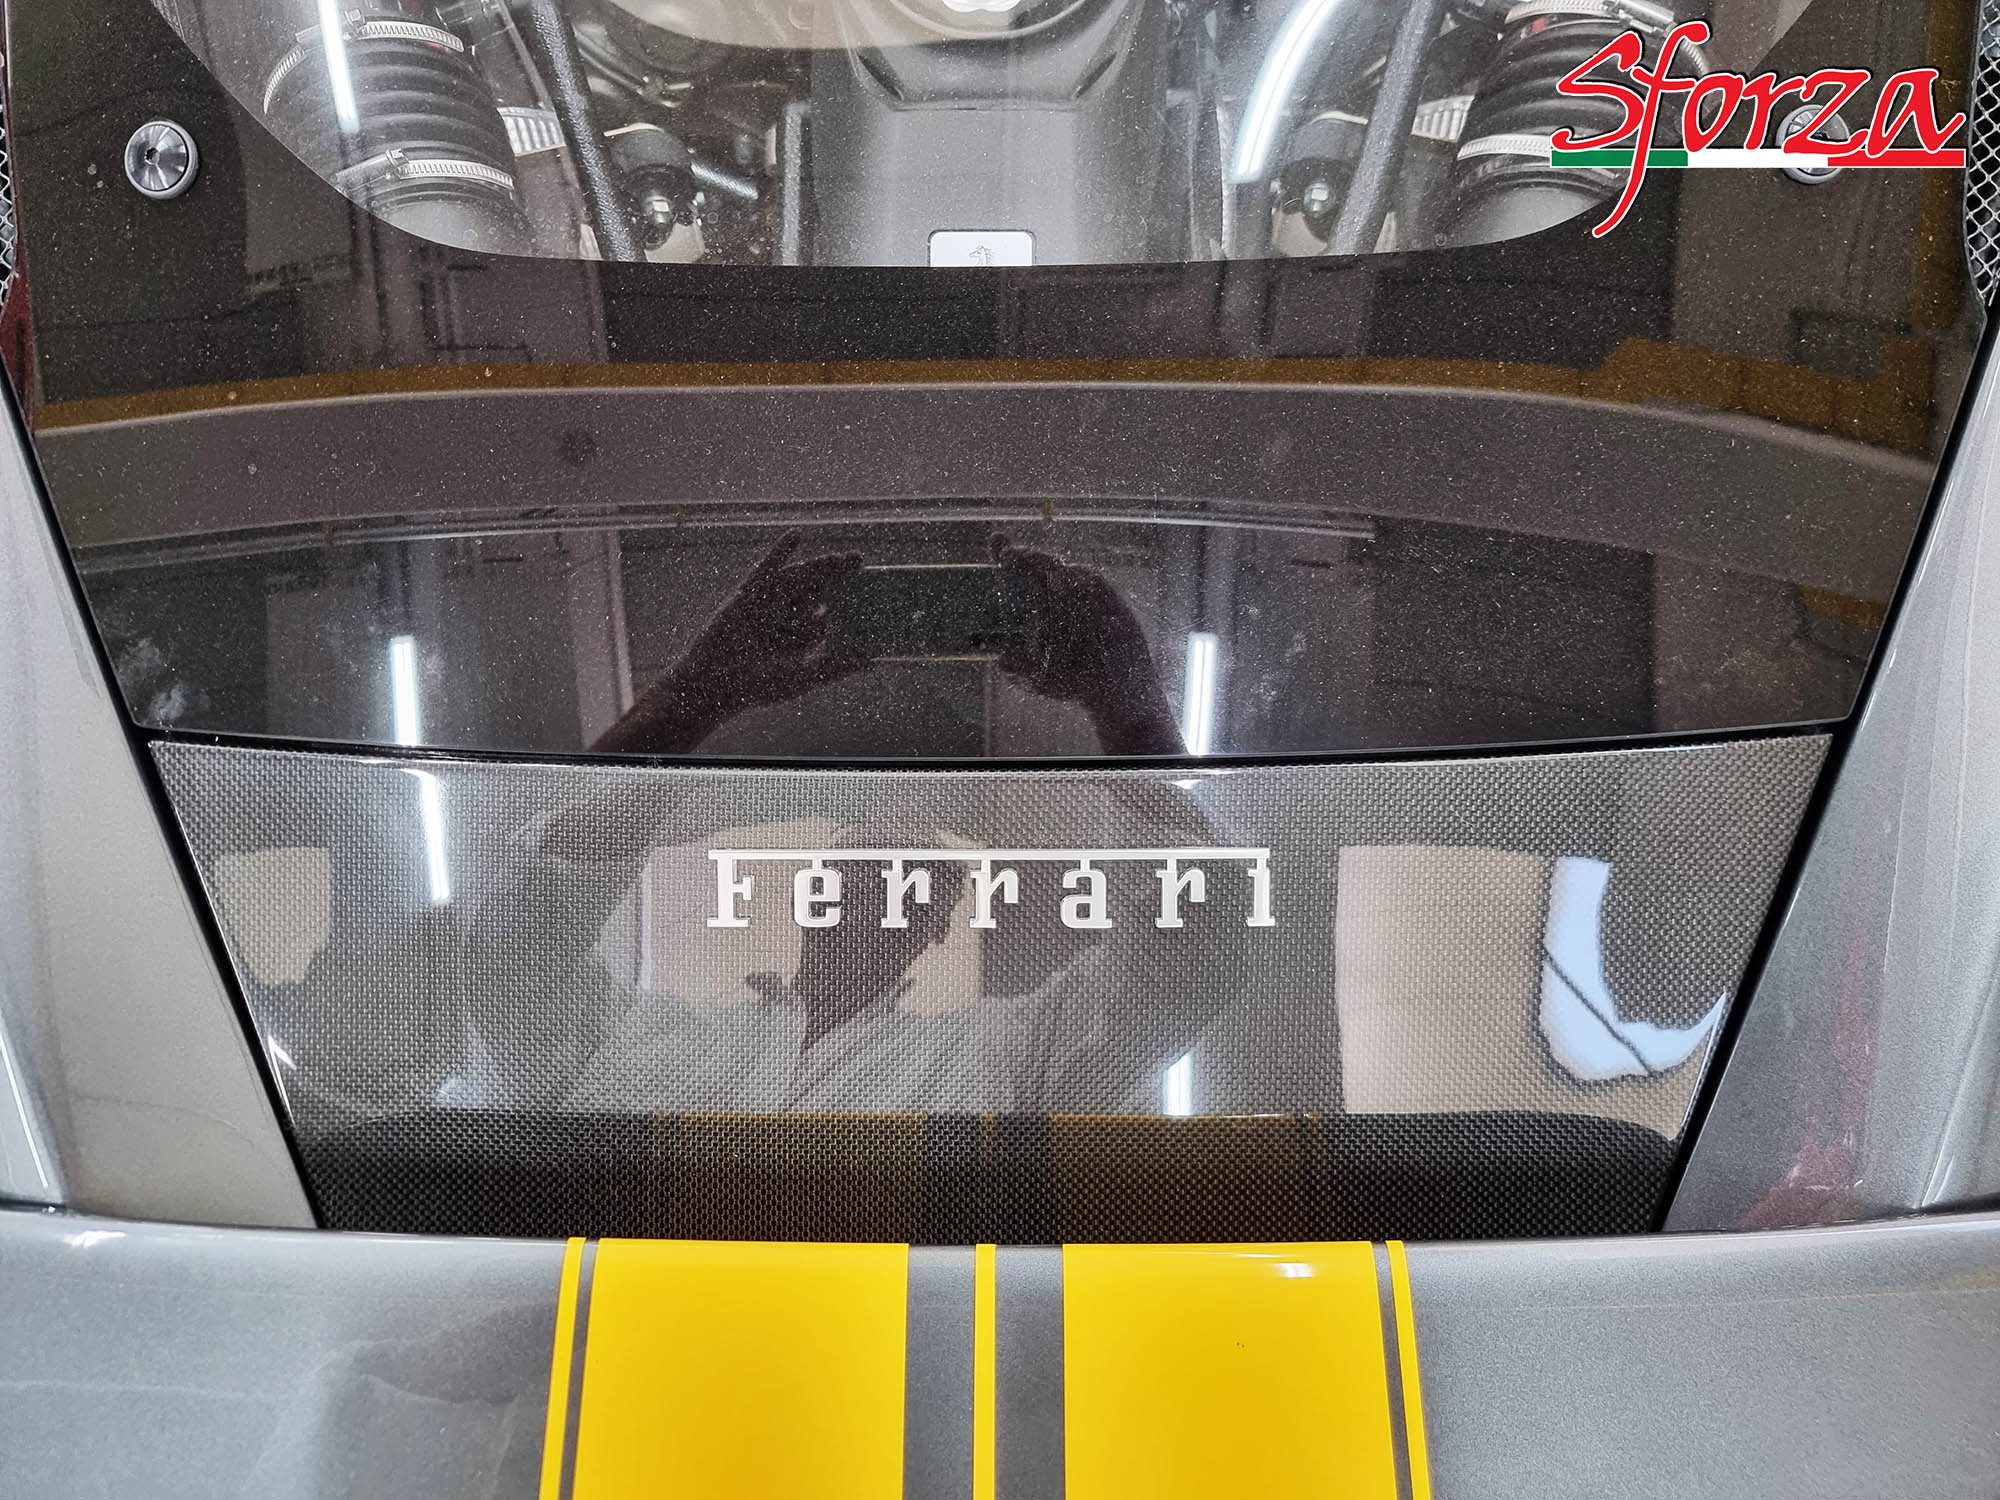 https://www.sforza.tech/wp-content/uploads/2021/10/Ferrari-F8-Tributo-condotto-aerodinamico-posteriore-carbonio.jpg